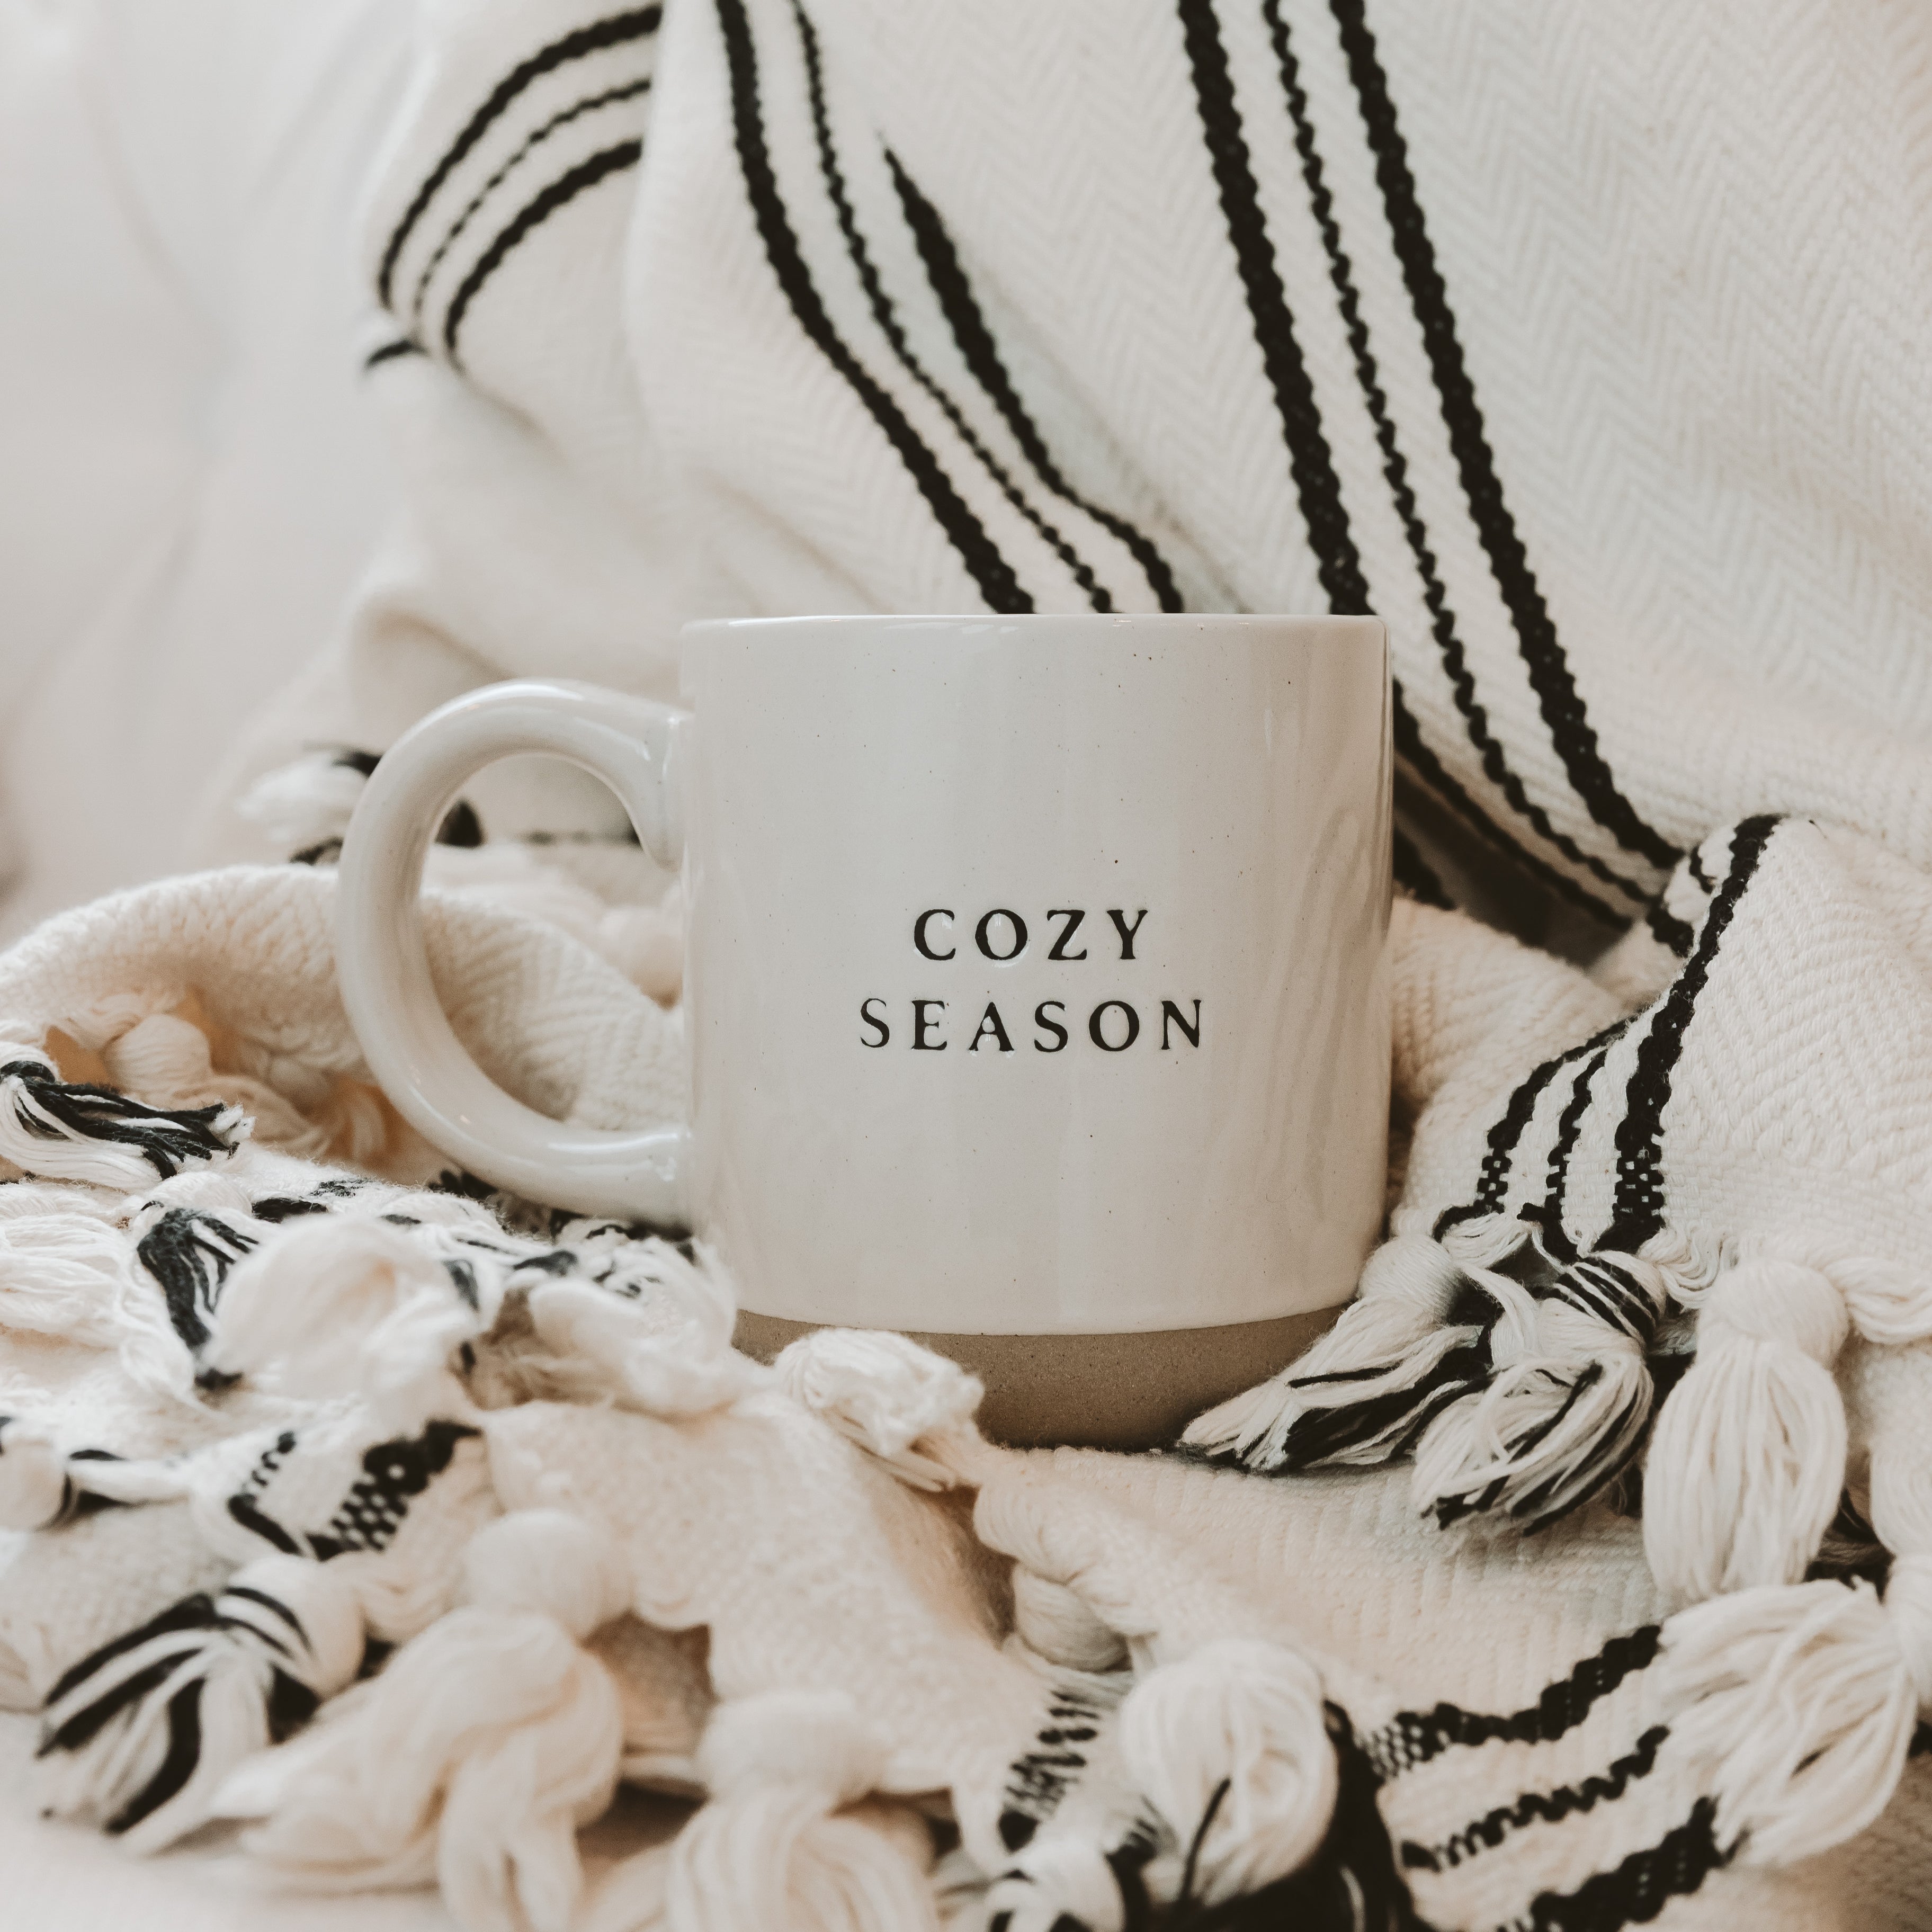 Cozy Season 14OZ. Mug